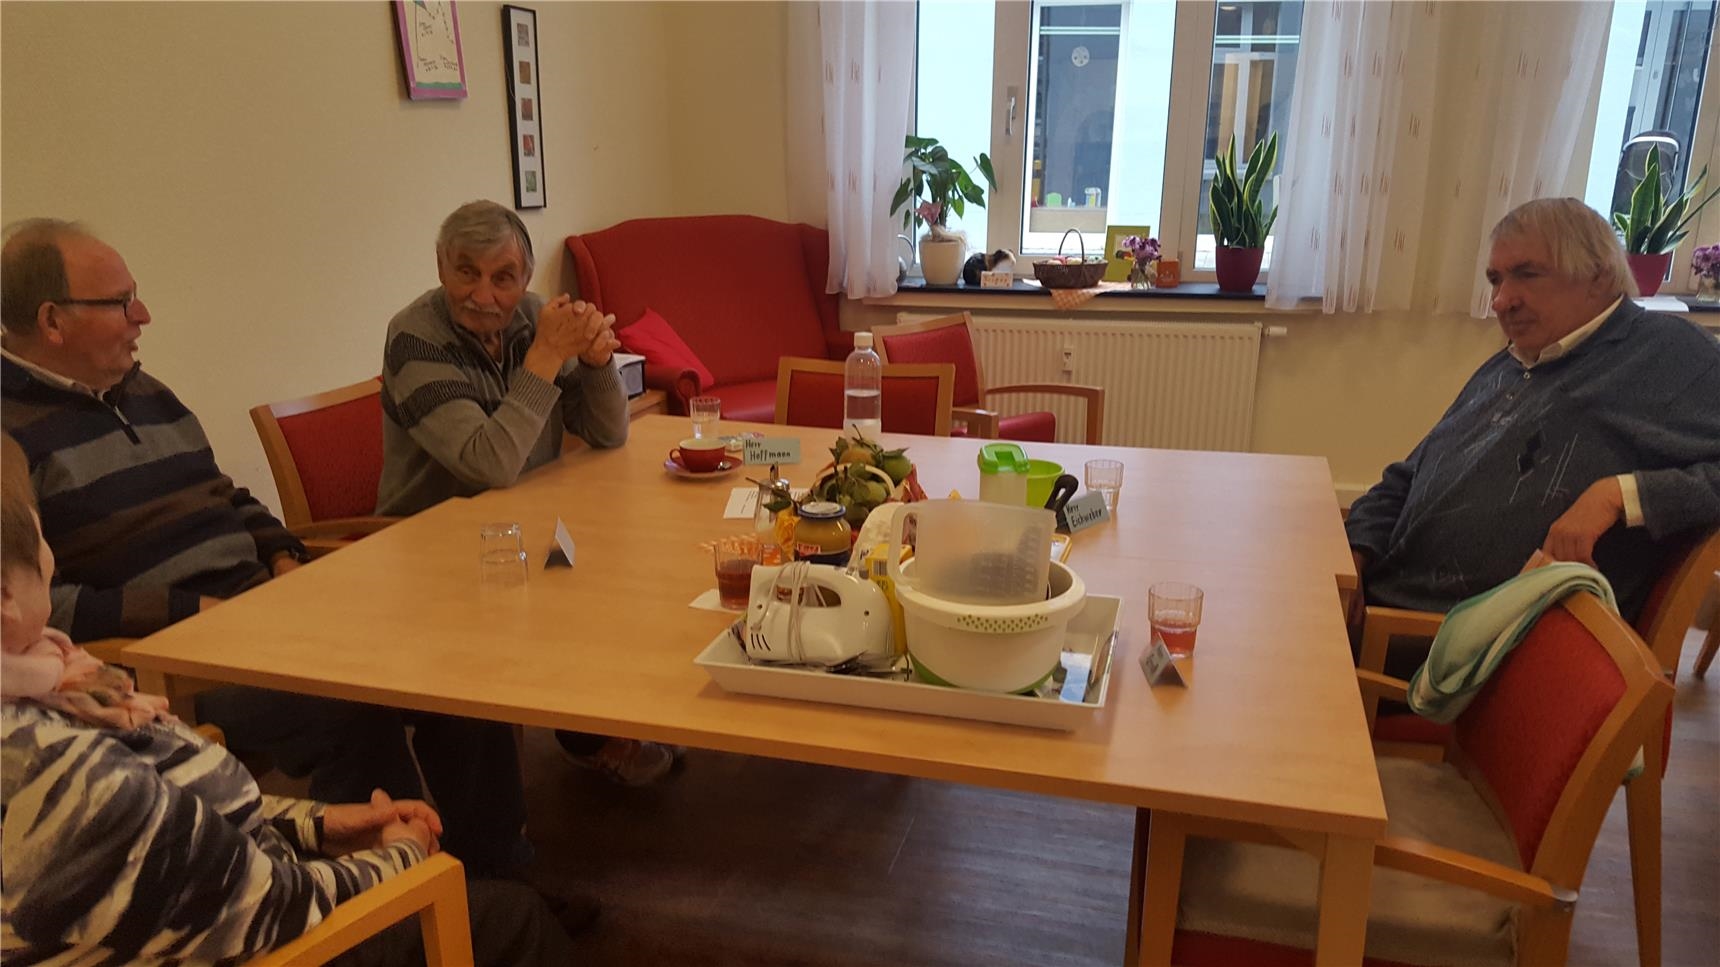 Drei Senioren sitzen am Tisch, auf dem ein Mixer und Schüsseln stehen (Tagespflege St. Rochus)